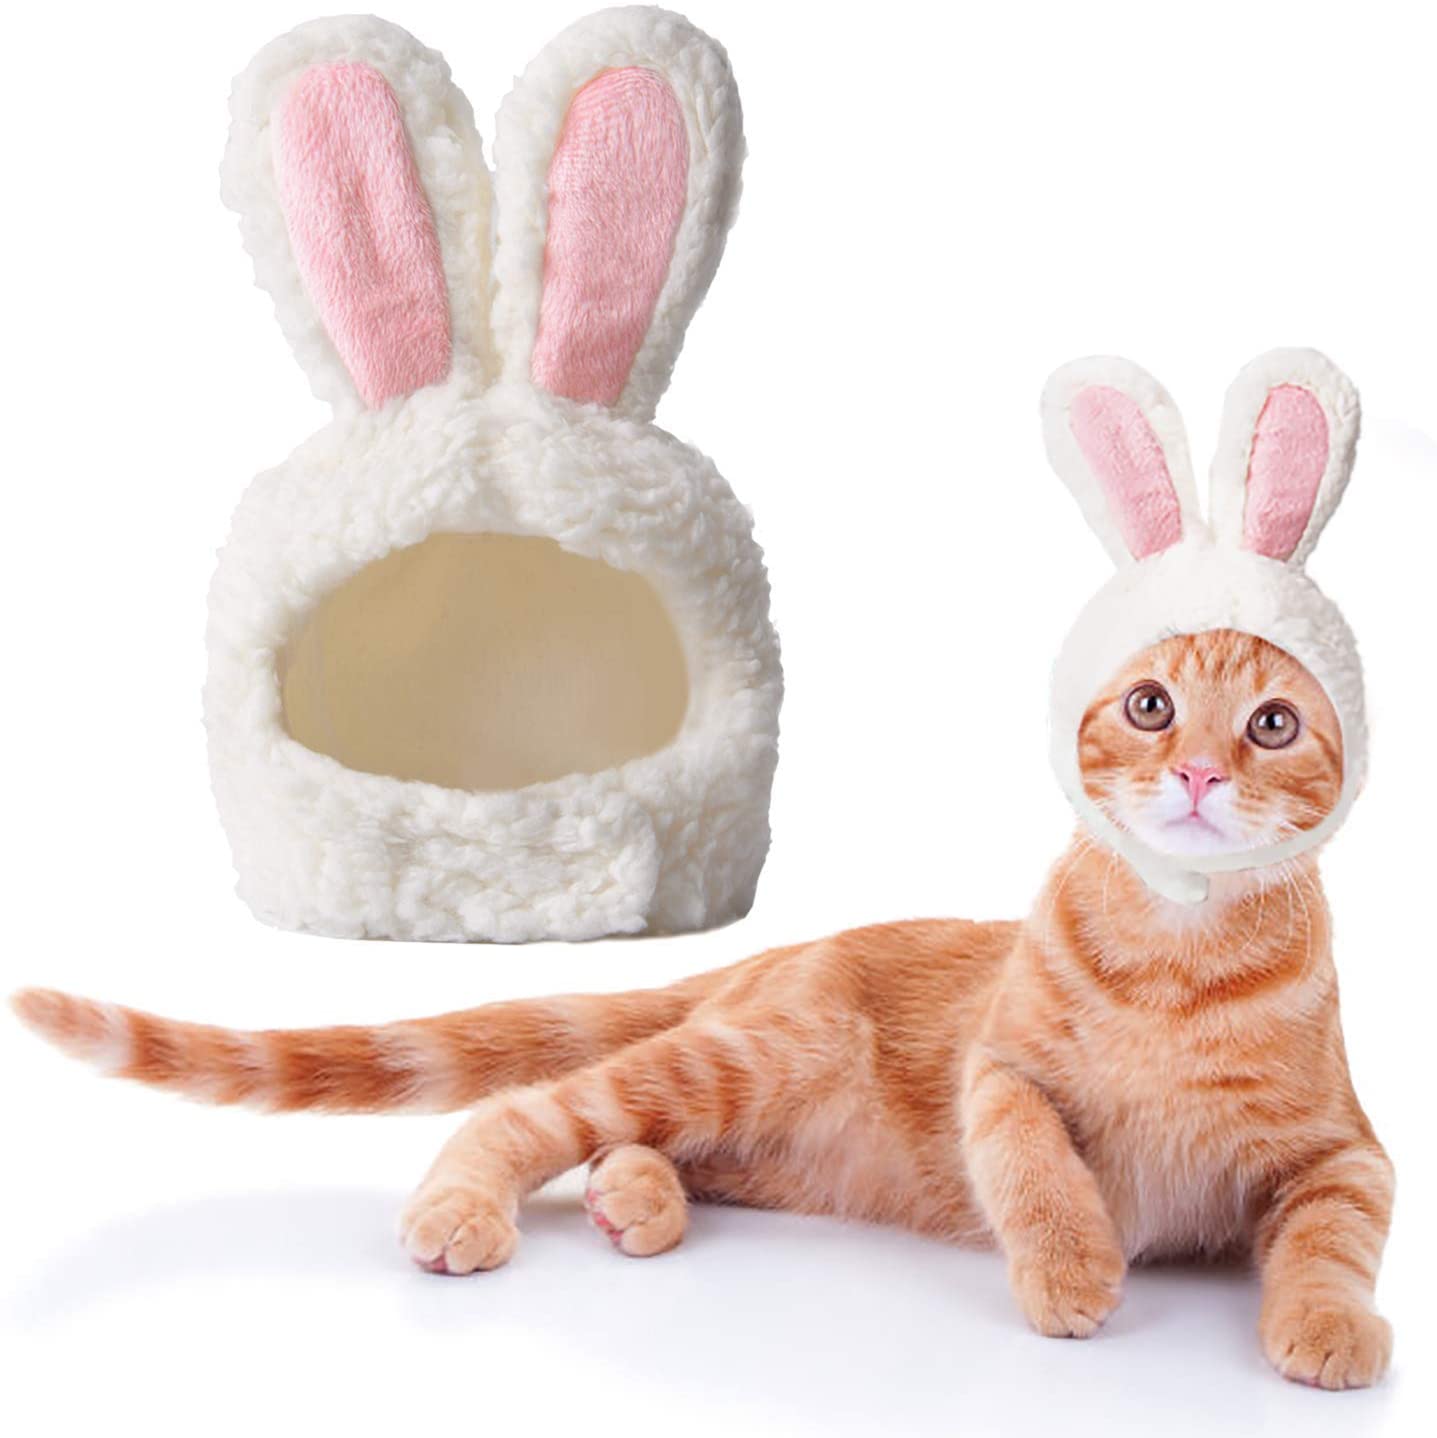  Disfraz Gato, Disfraz de Conejo de Gato de tamaño Ajustable, Disfraz de Cachorro de Pascua, Disfraz para Gato Orejas de Conejo para Cosplay de Pascua 